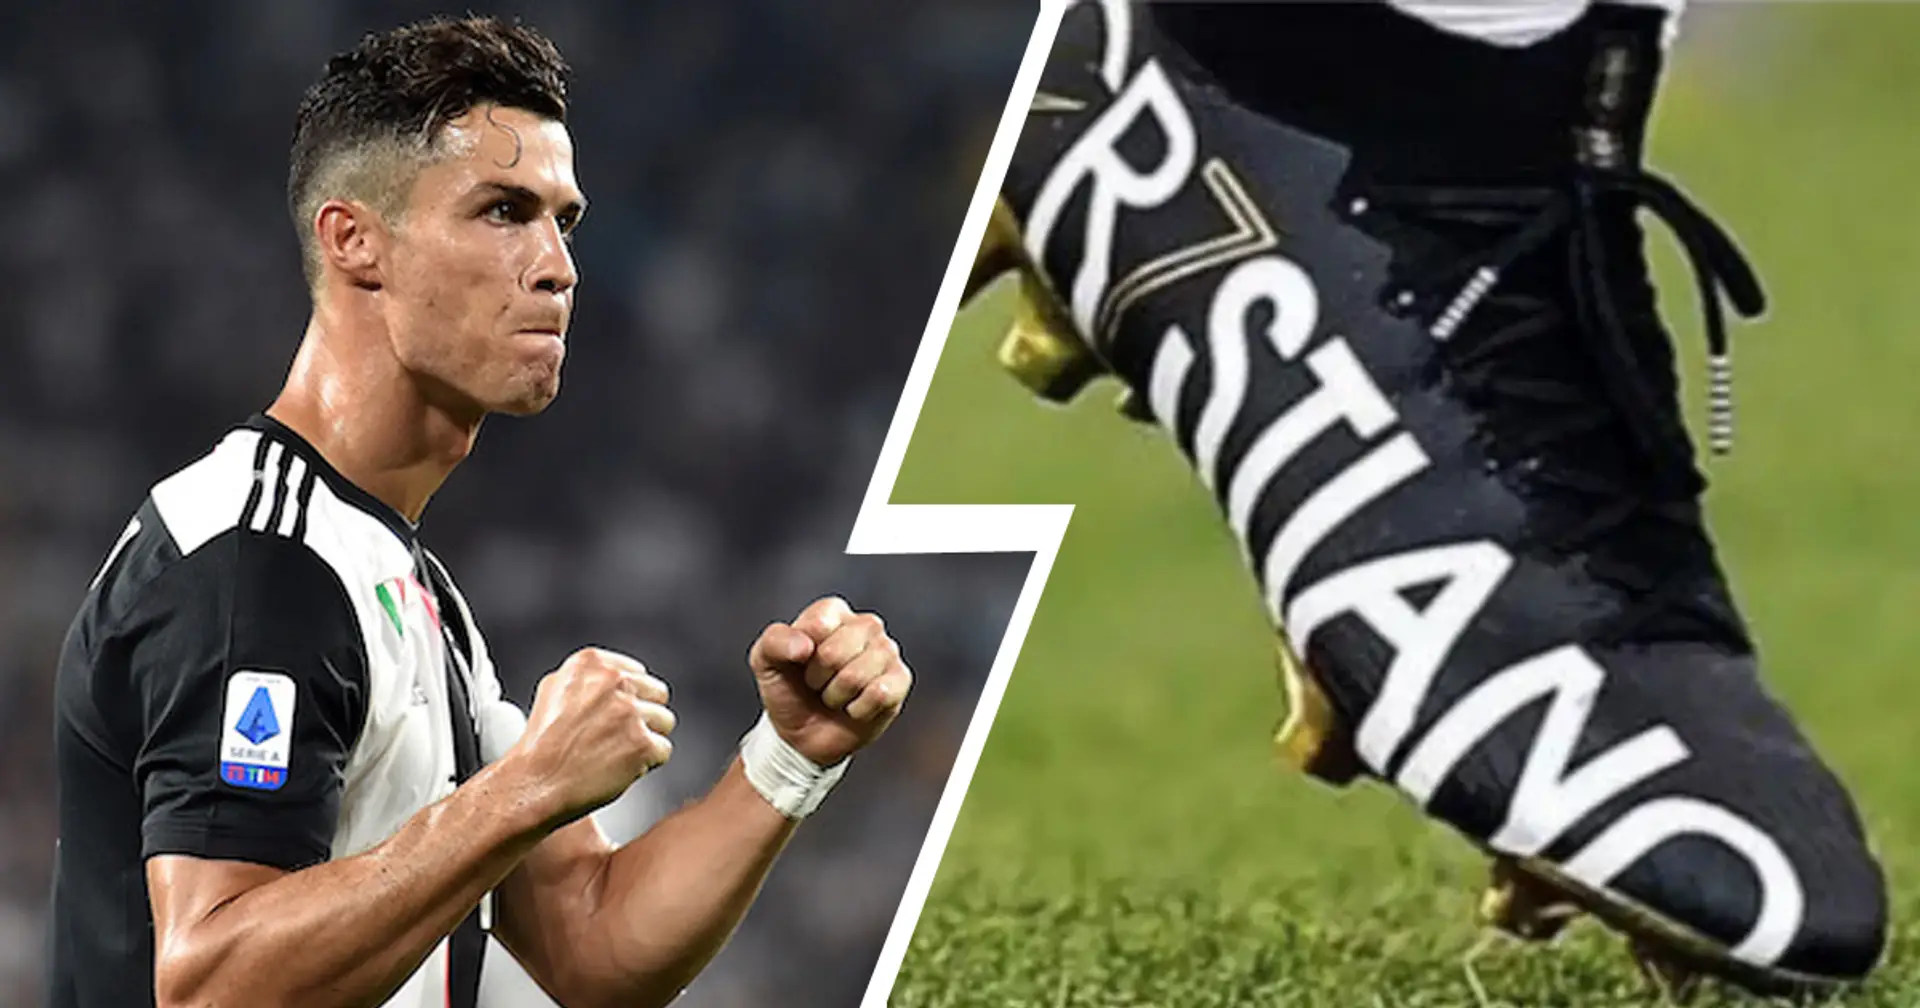 Cristiano Ronaldo sempre più perfezionista! CR7 ricorre a delle "scarpette modificate" per correre più veloce